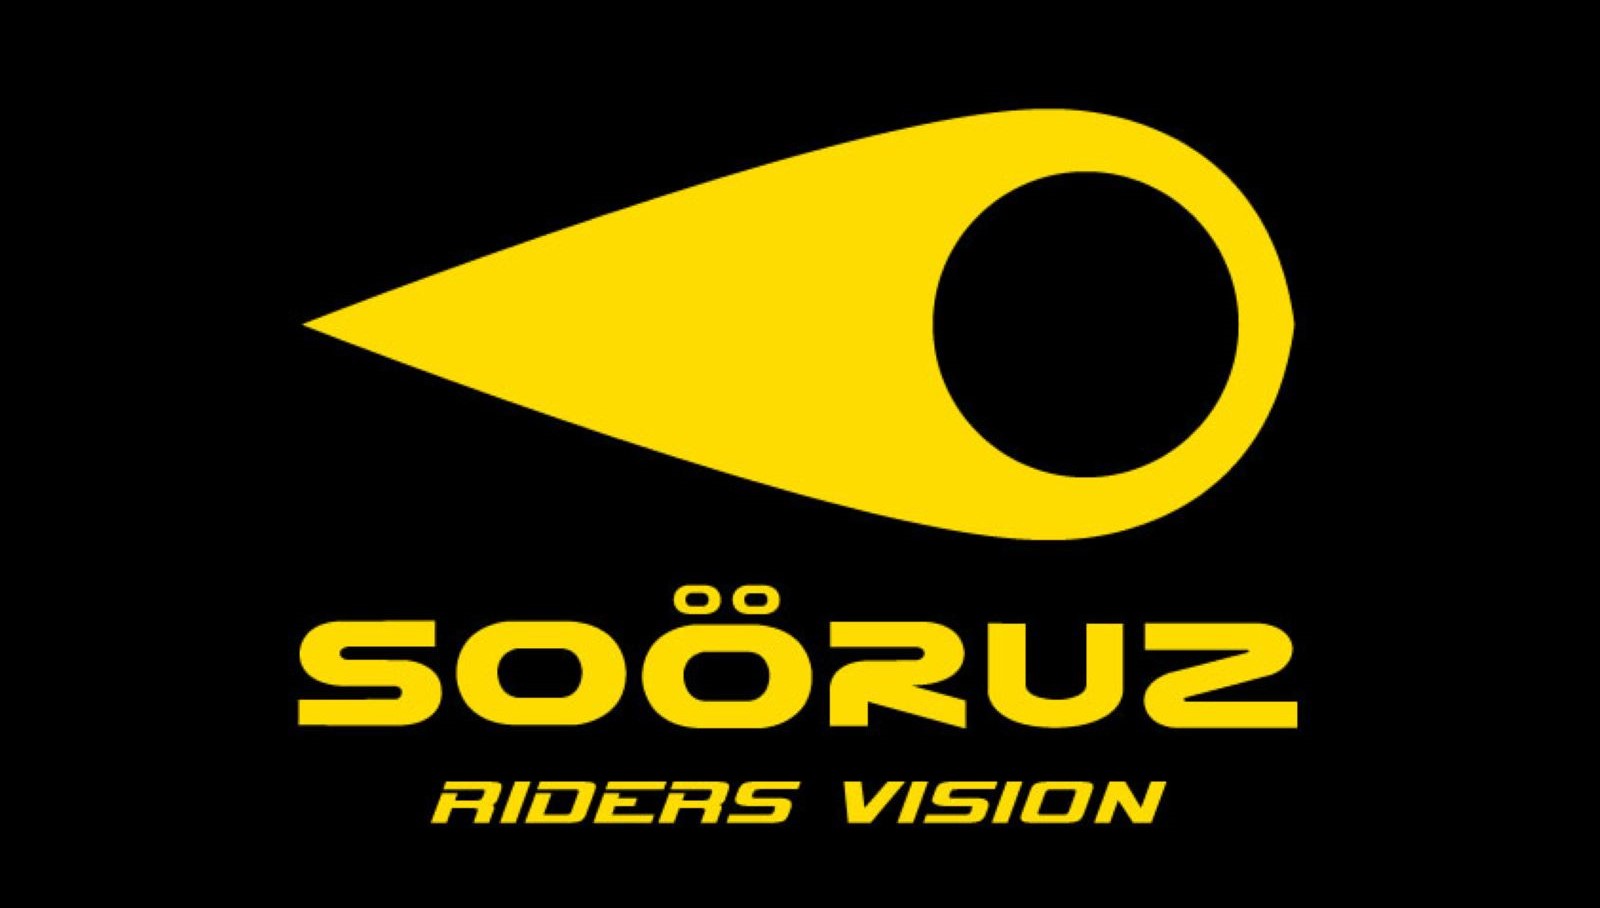 Sooruz logo